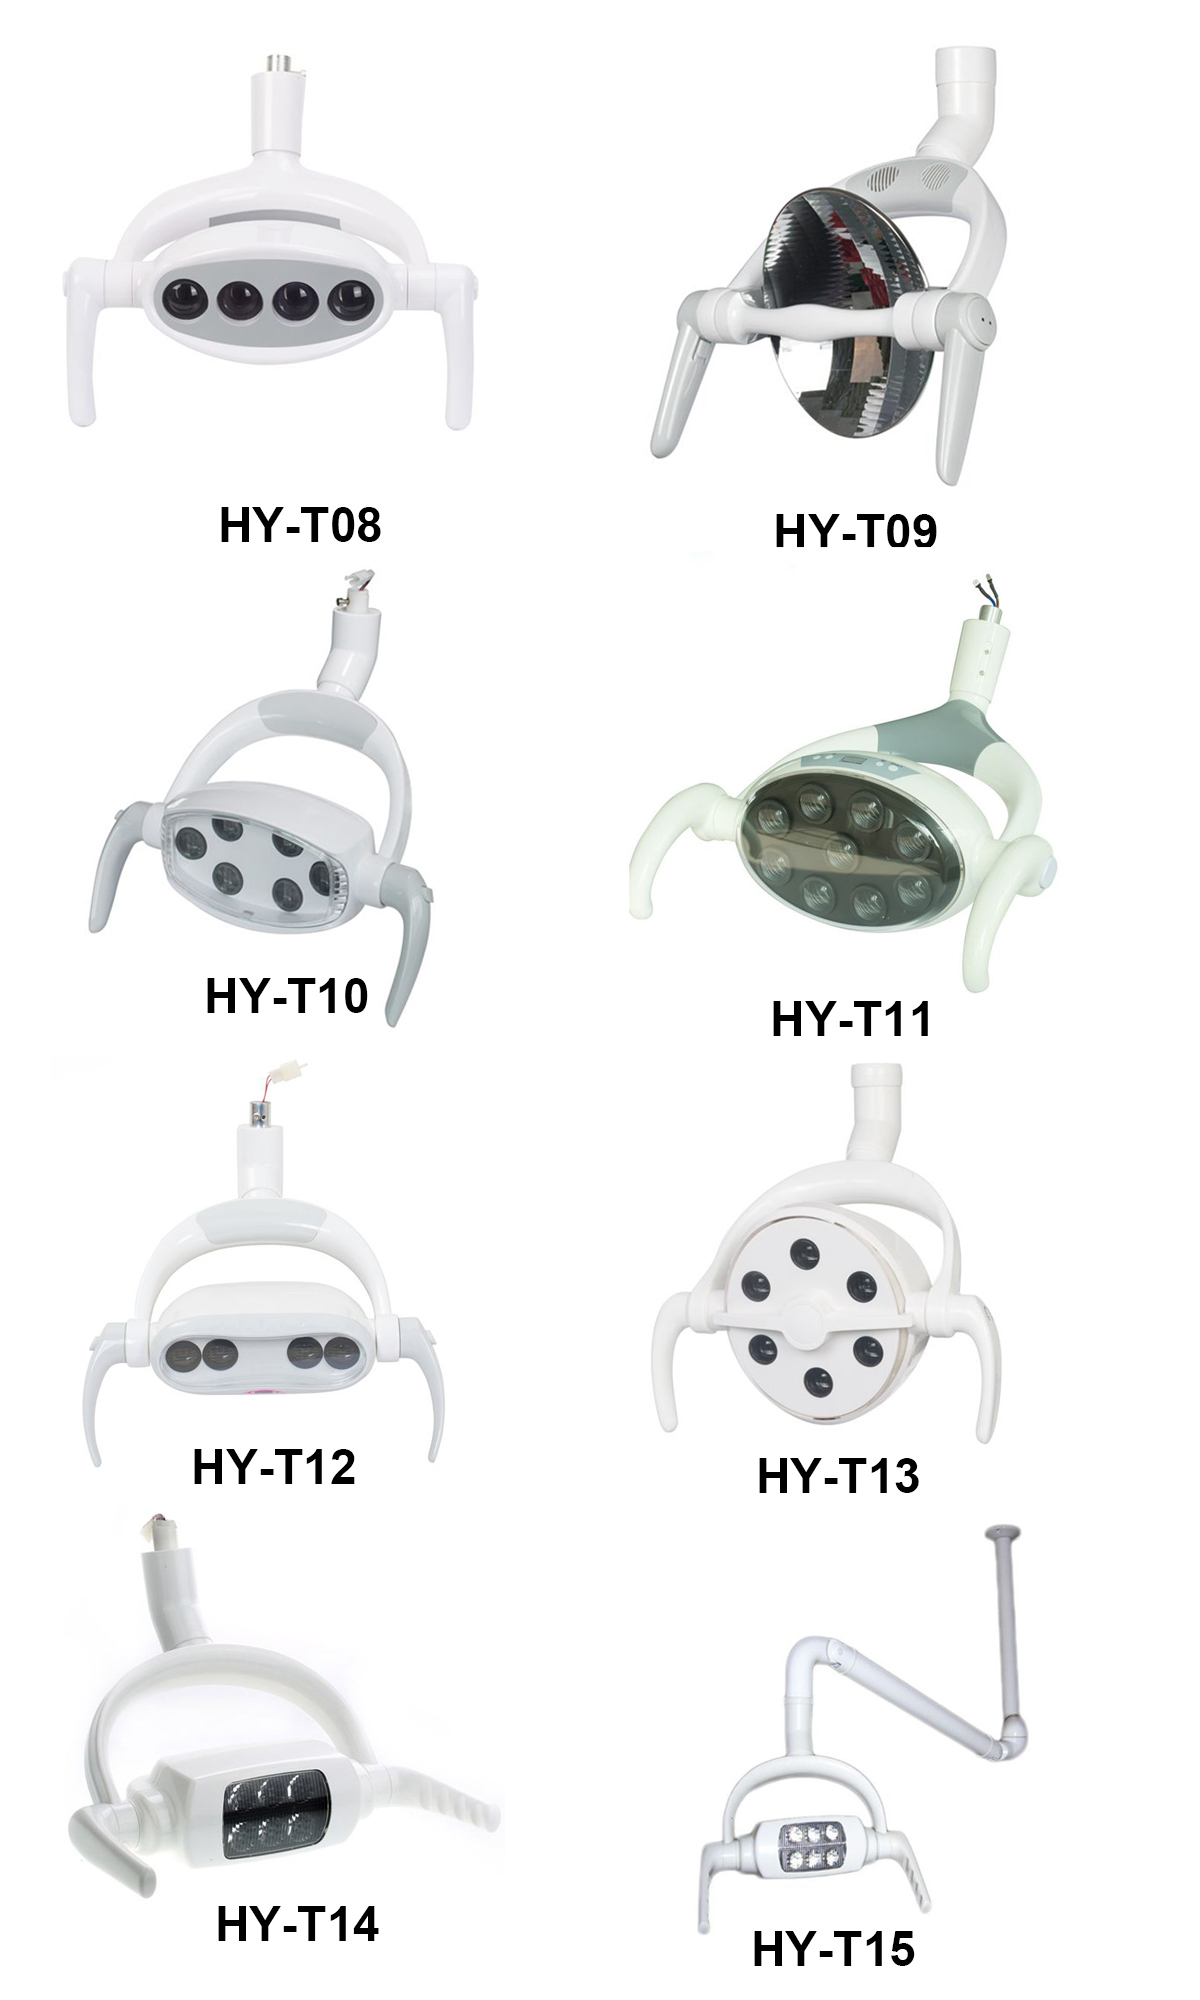 HY-T14 Dental LED Lamp